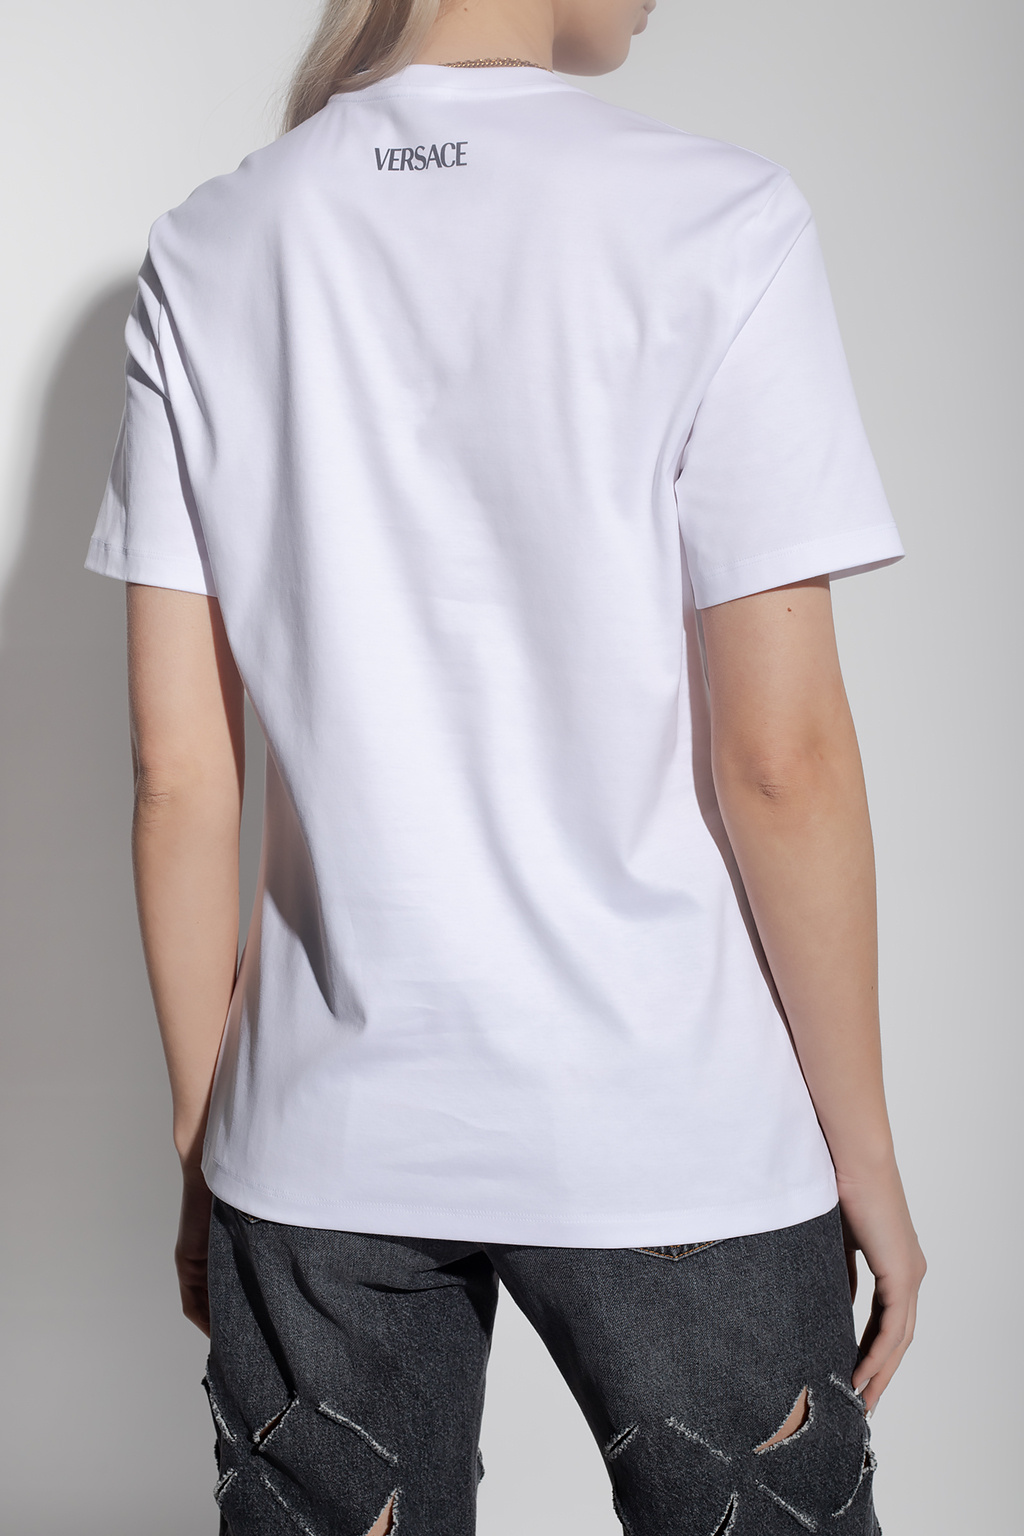 Versace True Religion T-shirt med rund hals og logo